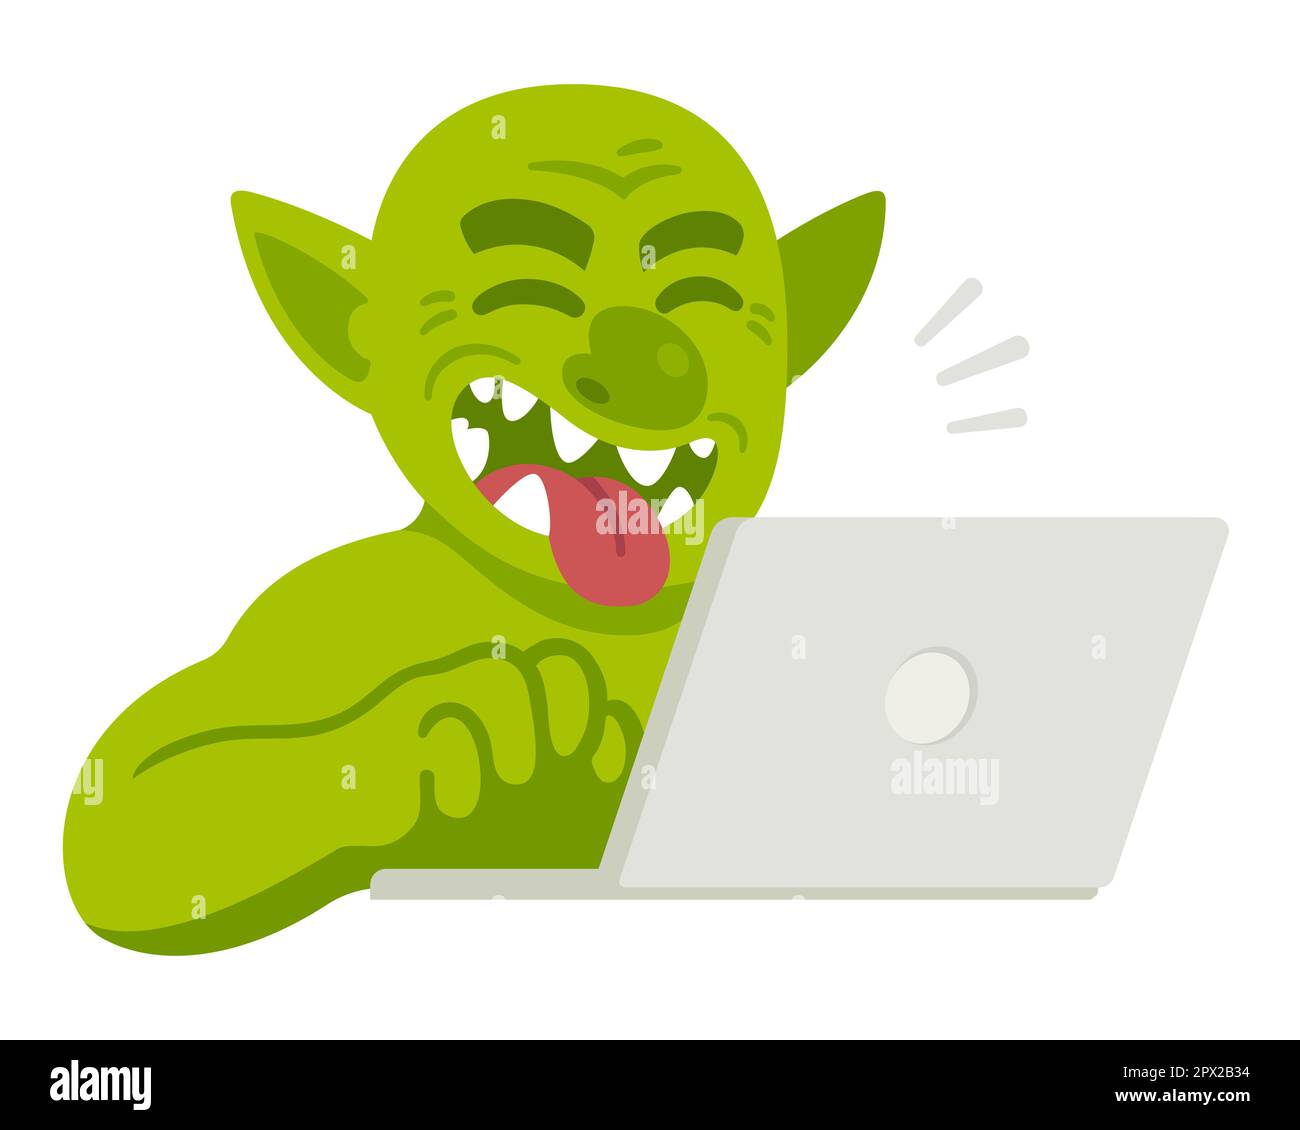 Ein Cartoon-Internet-Troll, der einen Kommentar auf dem Laptop tippt, lacht und die Zunge herausragt. Lustige Vektordarstellung von Trolling oder Cybermobbing. Stock Vektor